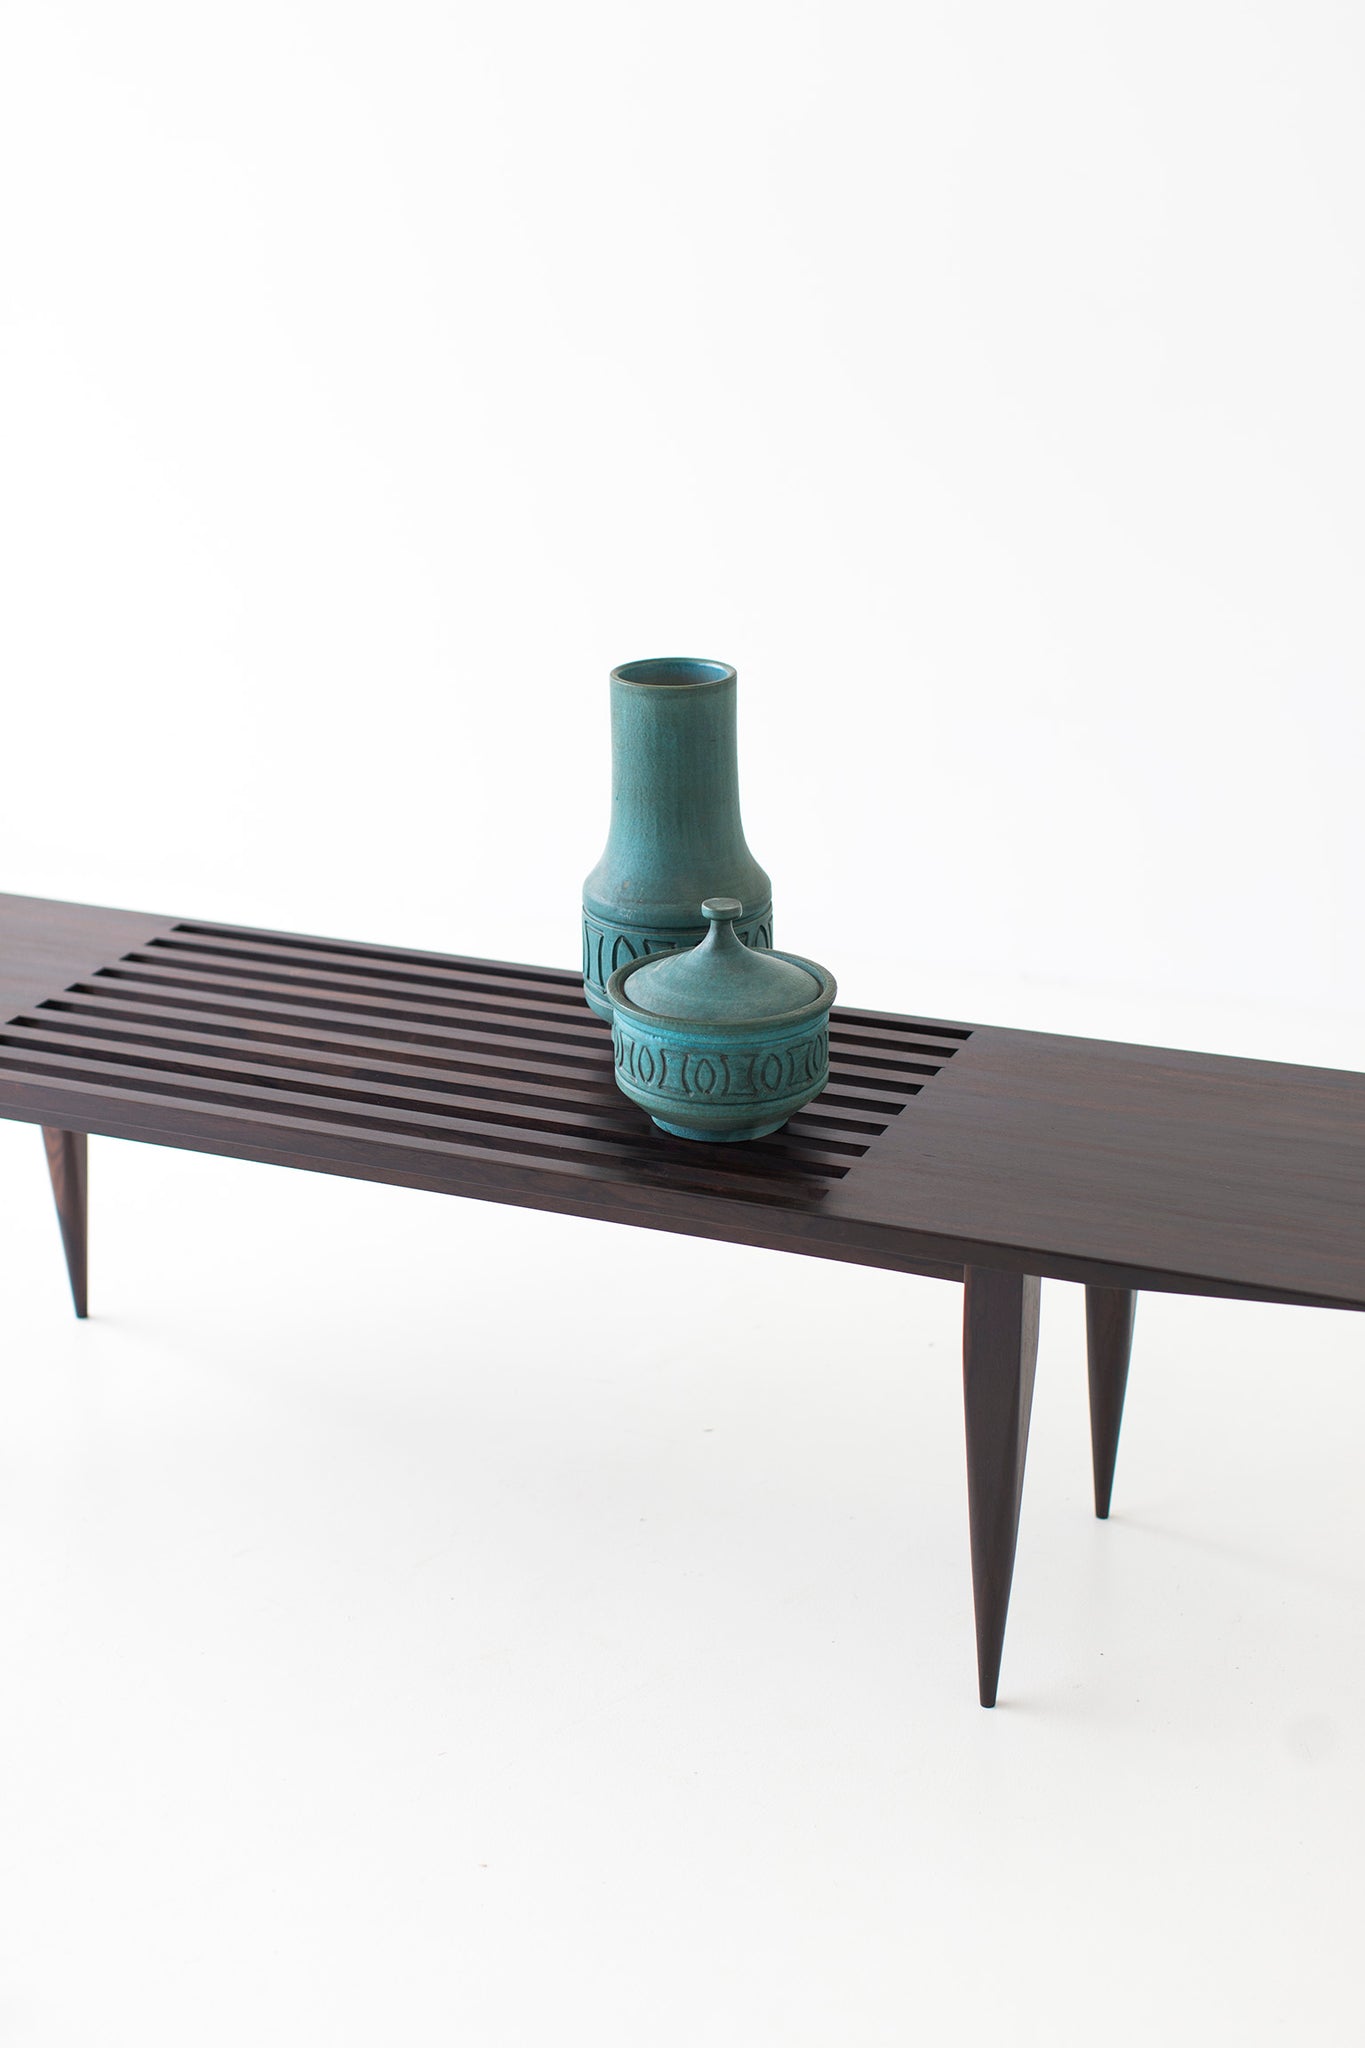  Modern Slatted Bench 1602 J Bench Craft Associates® Furniture, Image 02